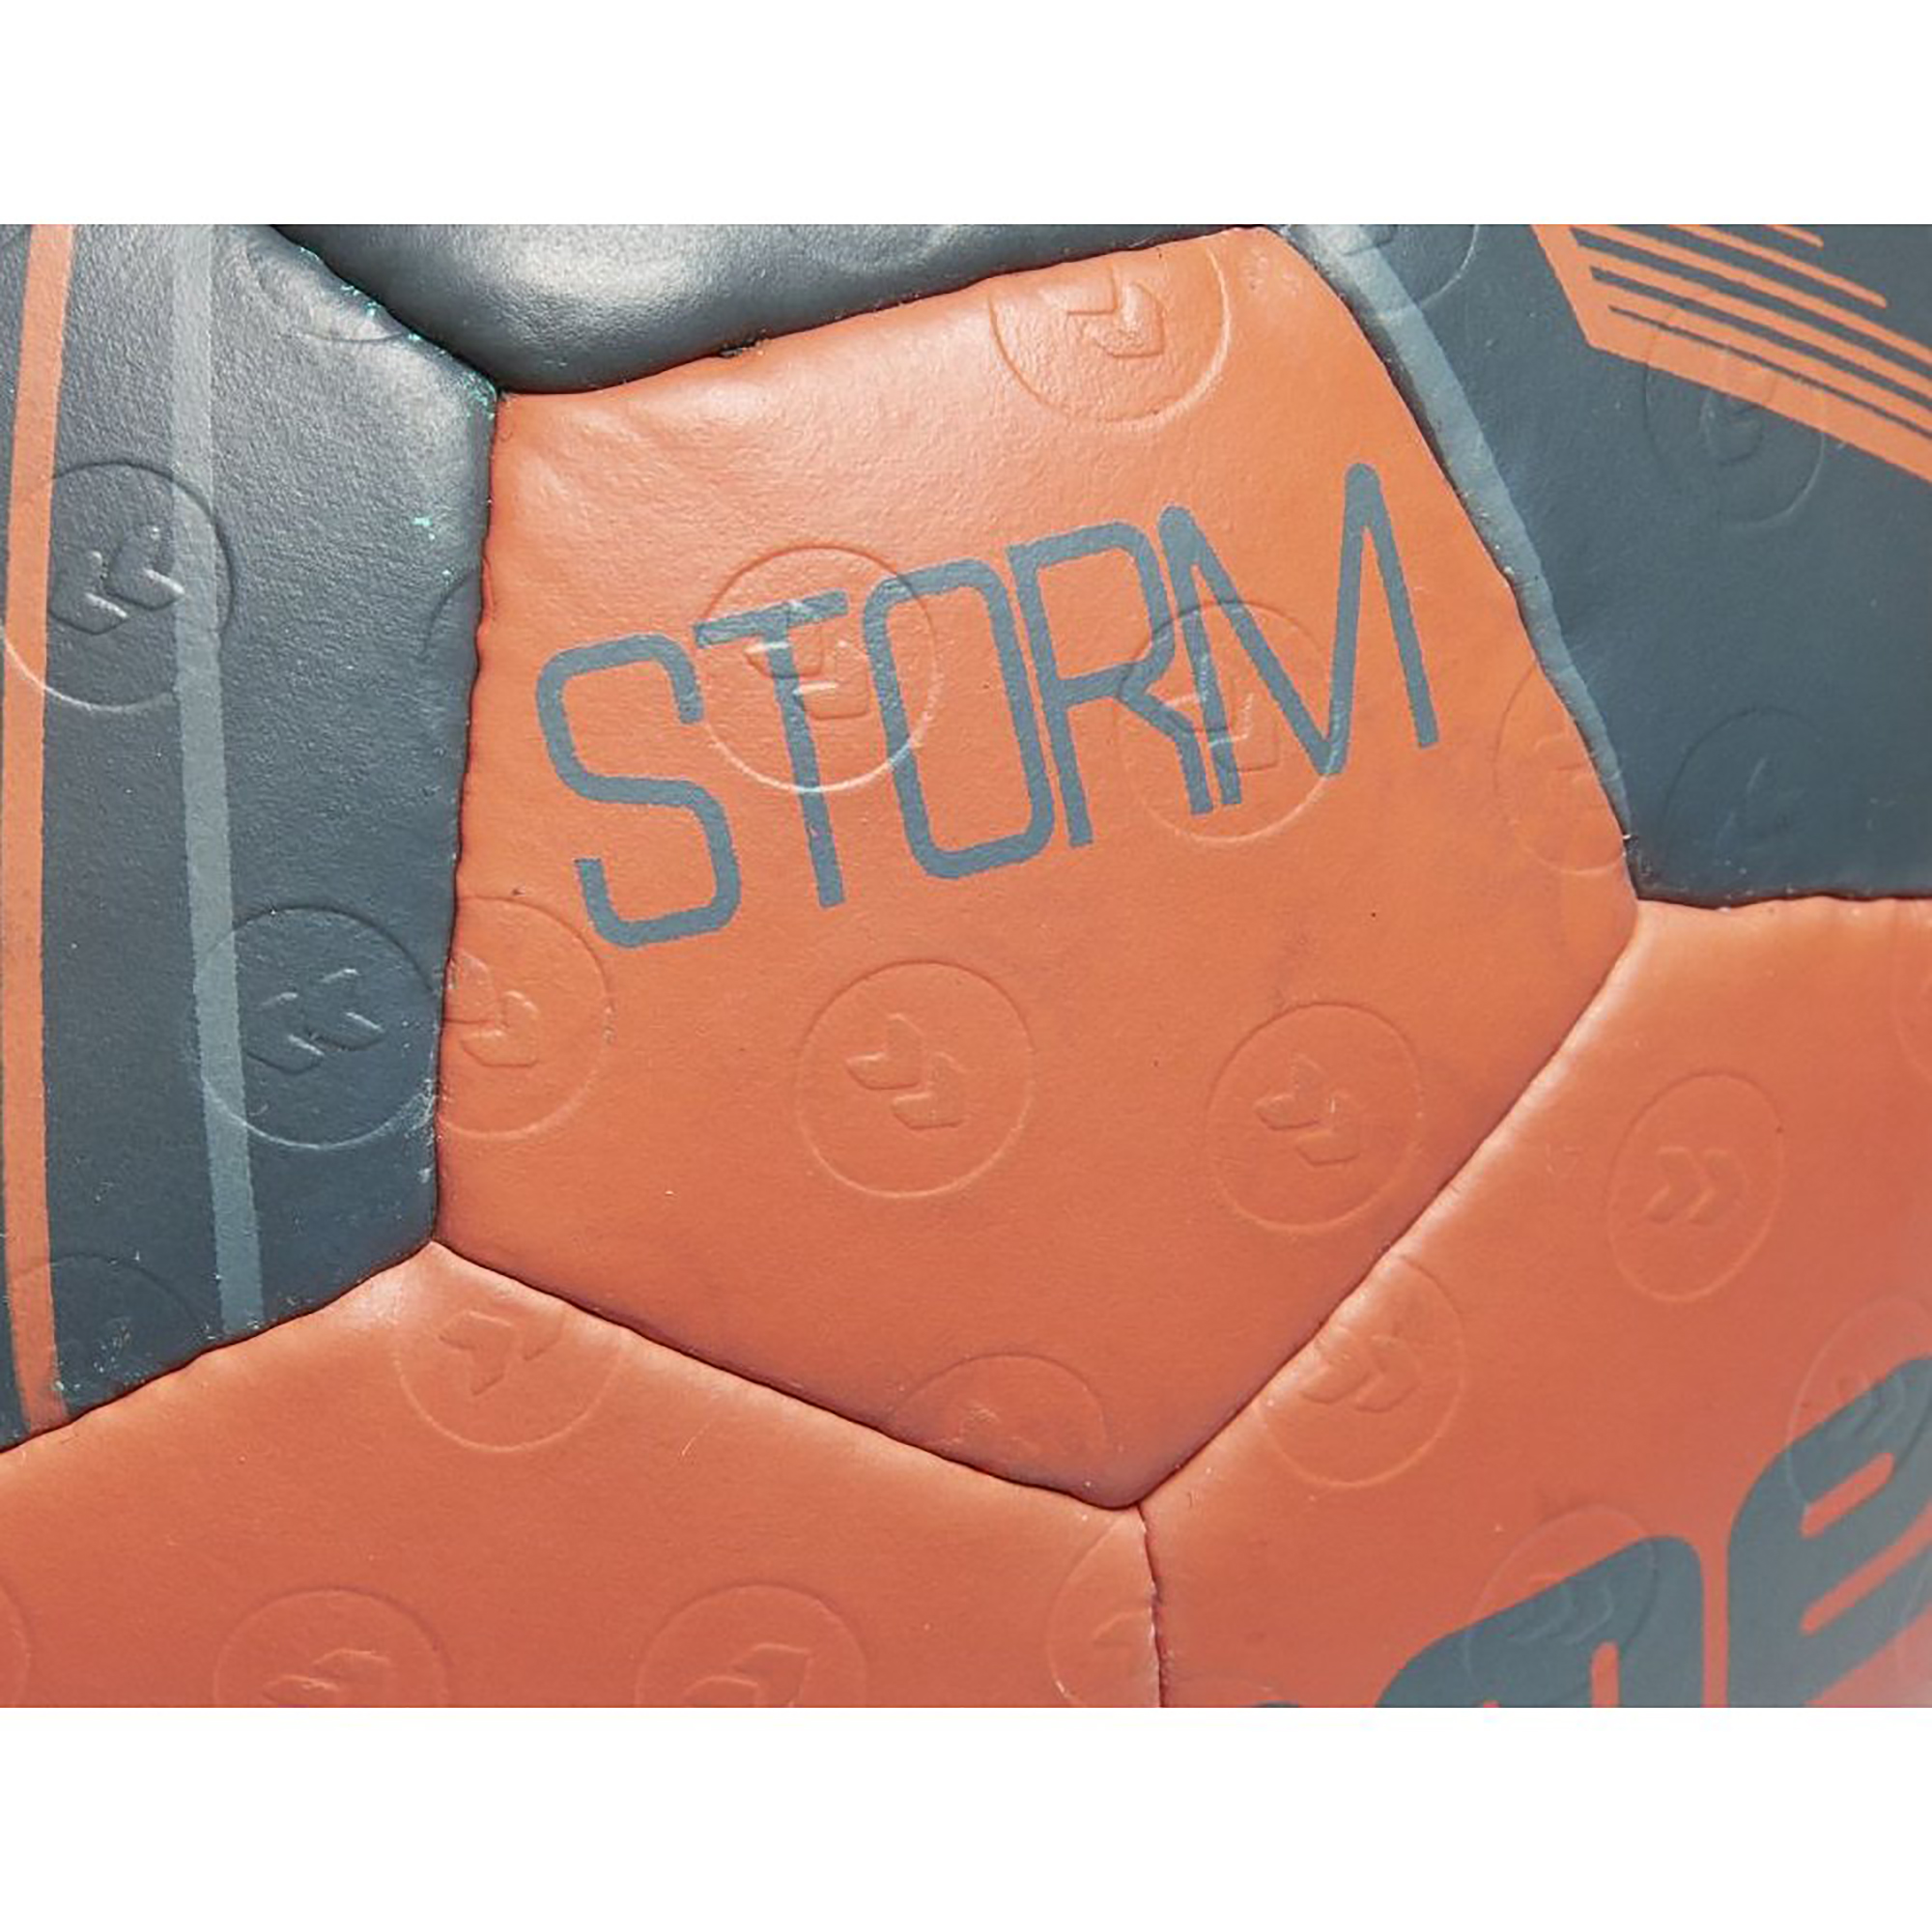 Hummel Storm Handball